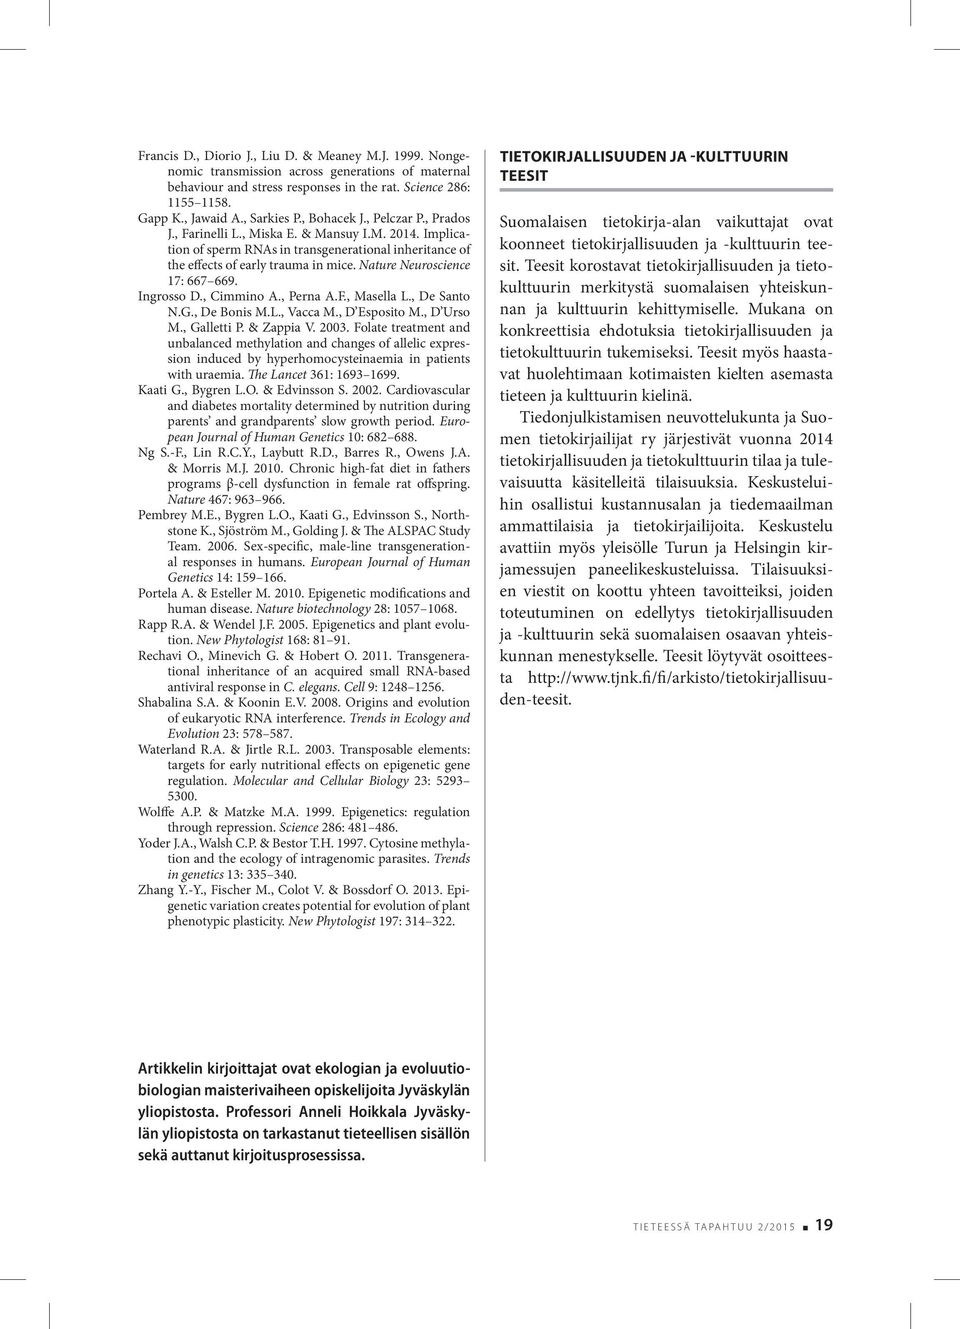 Nature Neuroscience 17: 667 669. Ingrosso D., Cimmino A., Perna A.F., Masella L., De Santo N.G., De Bonis M.L., Vacca M., D Esposito M., D Urso M., Galletti P. & Zappia V. 2003.